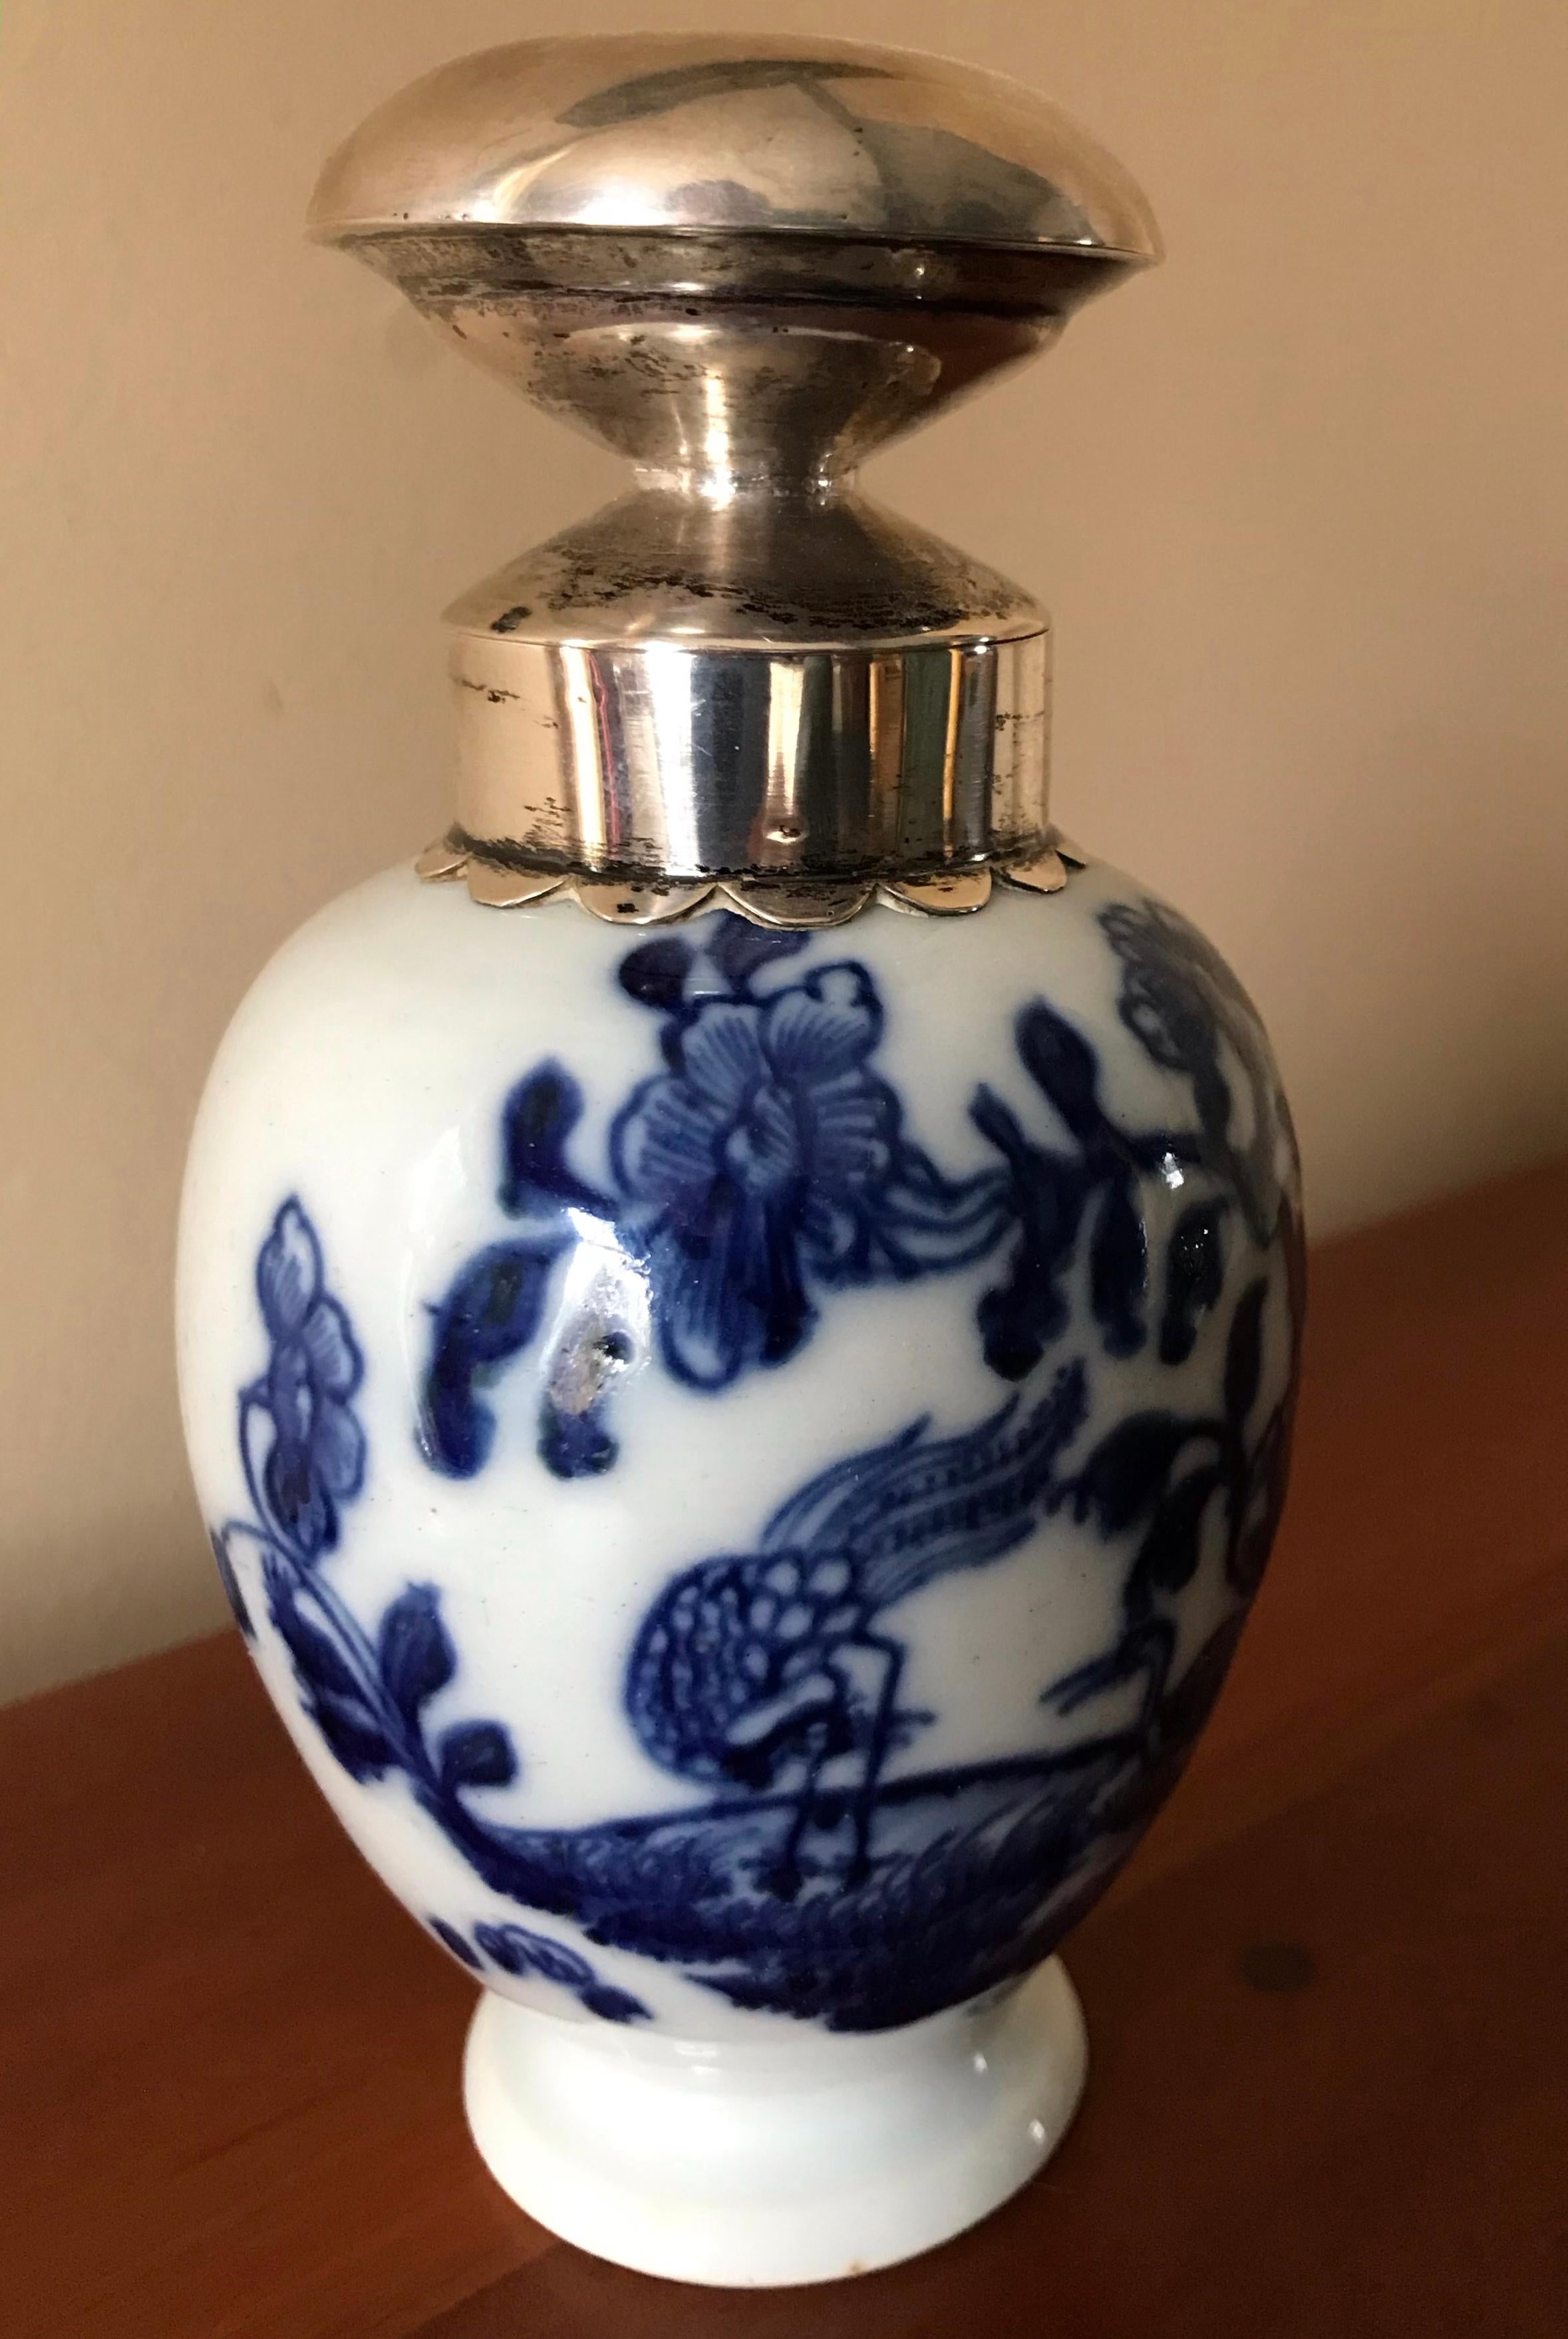 Boite à thé Kang-xi bleue et blanche avec bouchon en argent. Boite à thé chinoise de la fin du 18ème siècle avec des grues dans un paysage avec des brins de fleurs. Col et bouchon montés en argent hollandais. Chine, fin du XVIIIe siècle.